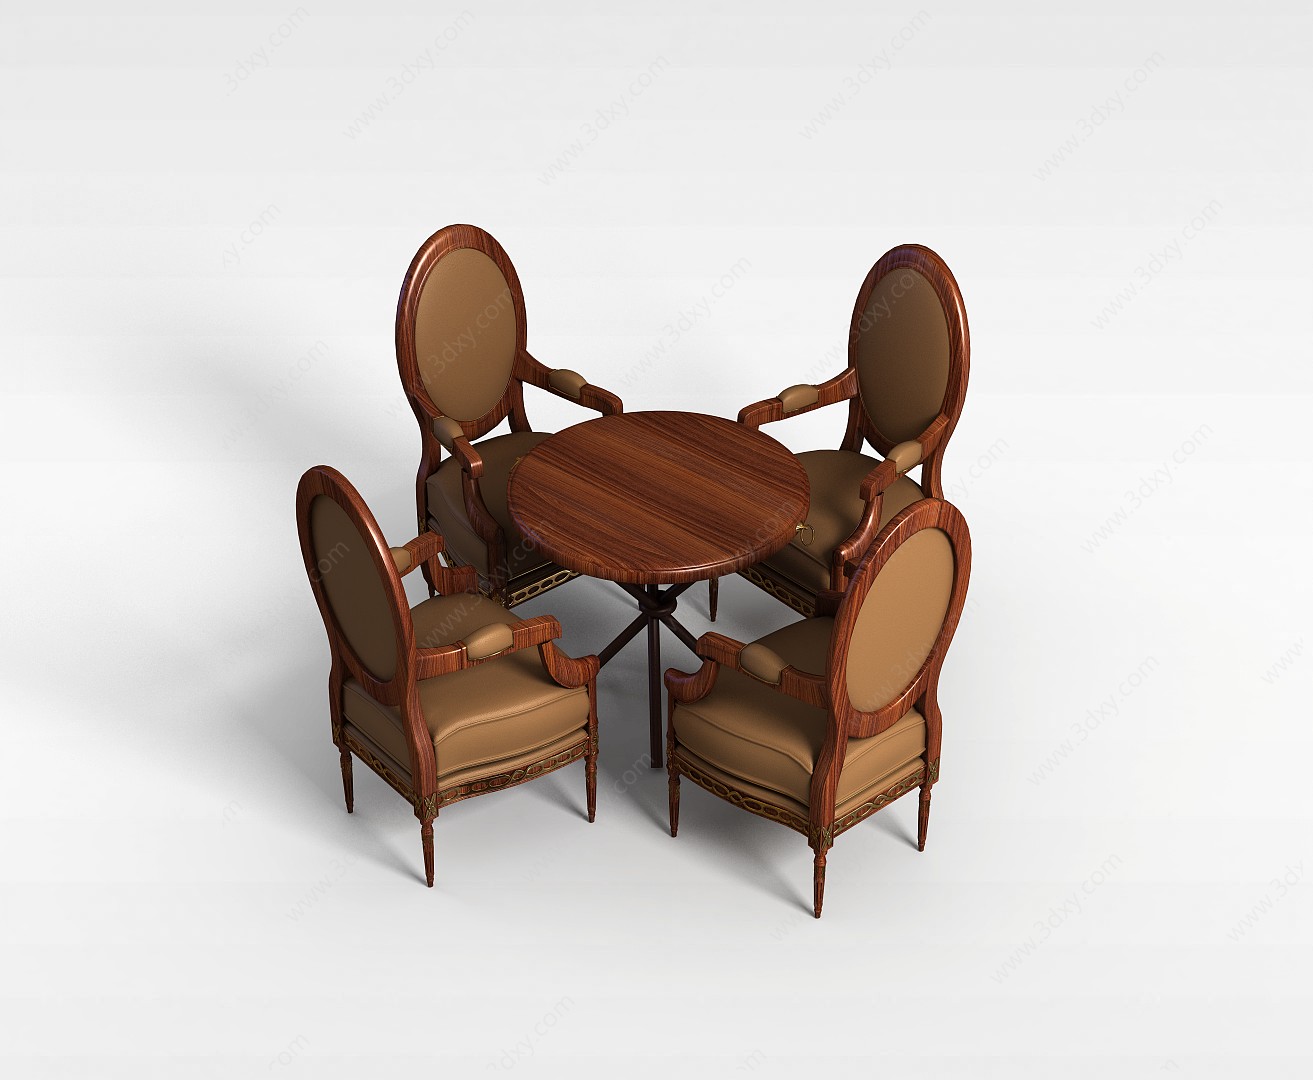 6人白木餐桌椅组合3D模型